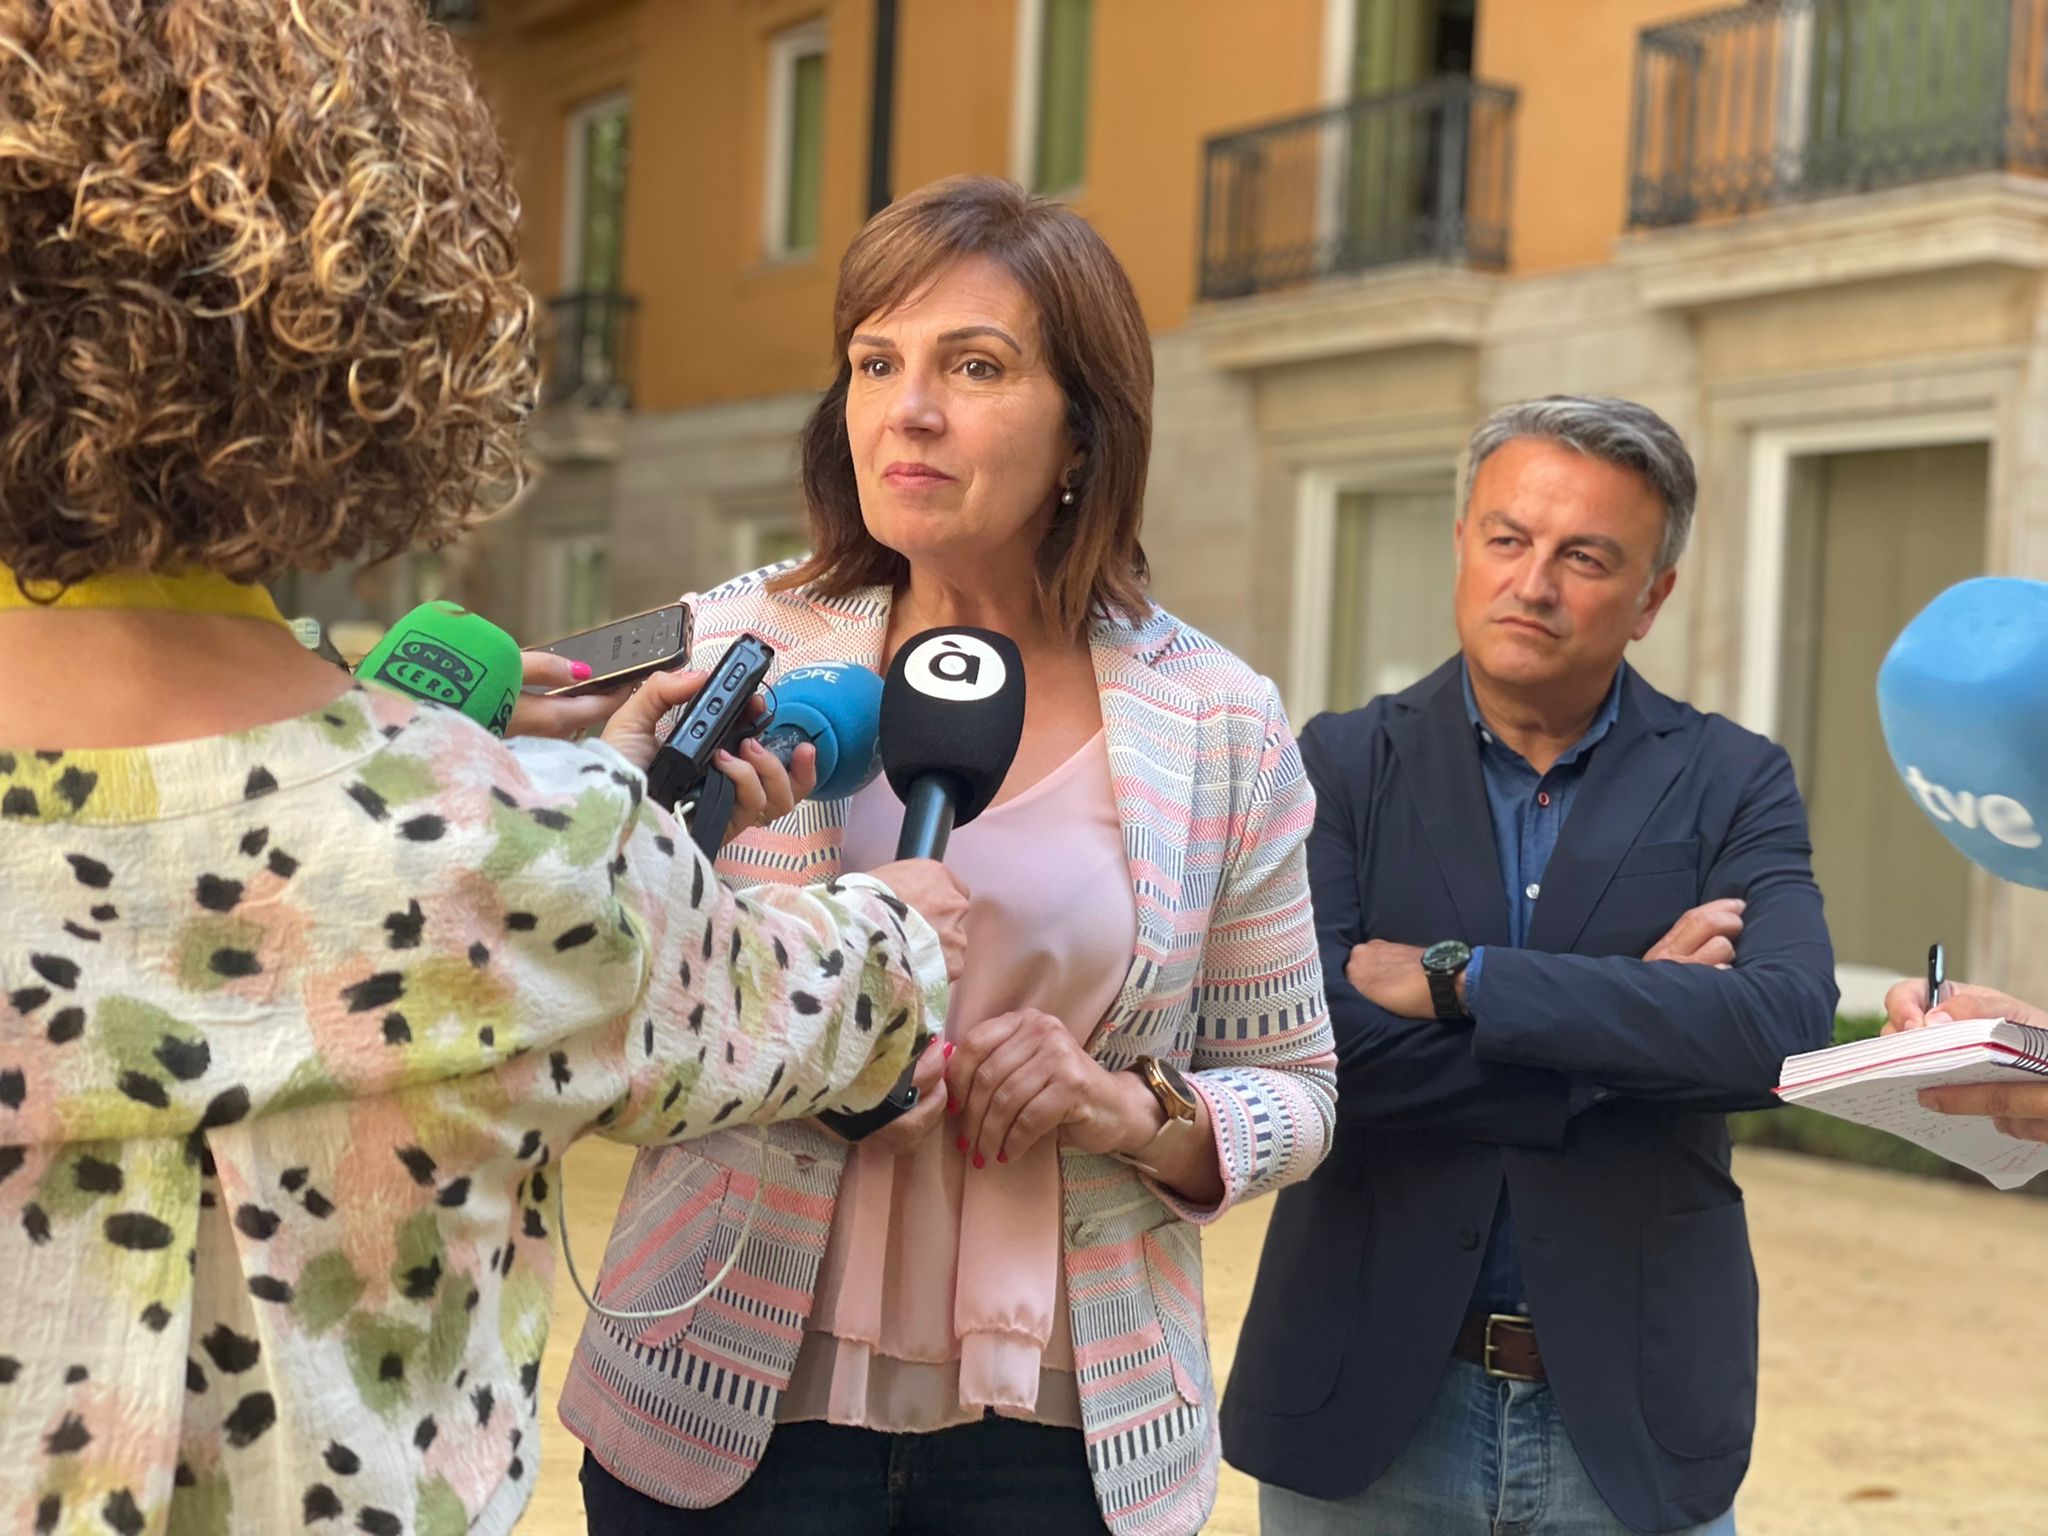 En este momento estás viendo Martínez: “Las listas de espera de la Comunitat Valenciana son de las más bajas de España gracias a nuestros profesionales y al esfuerzo inversor del Gobierno de Ximo Puig”